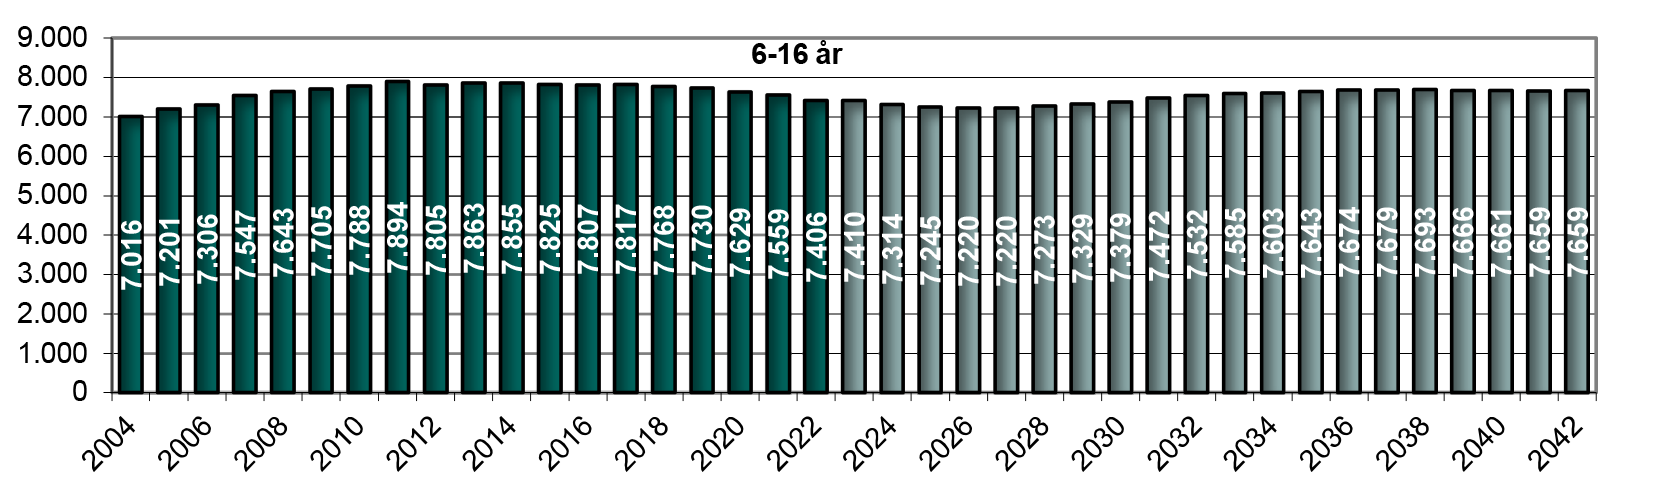 Figur 7. Hidtidig og forventet antal 6-16 årige (1. januar)